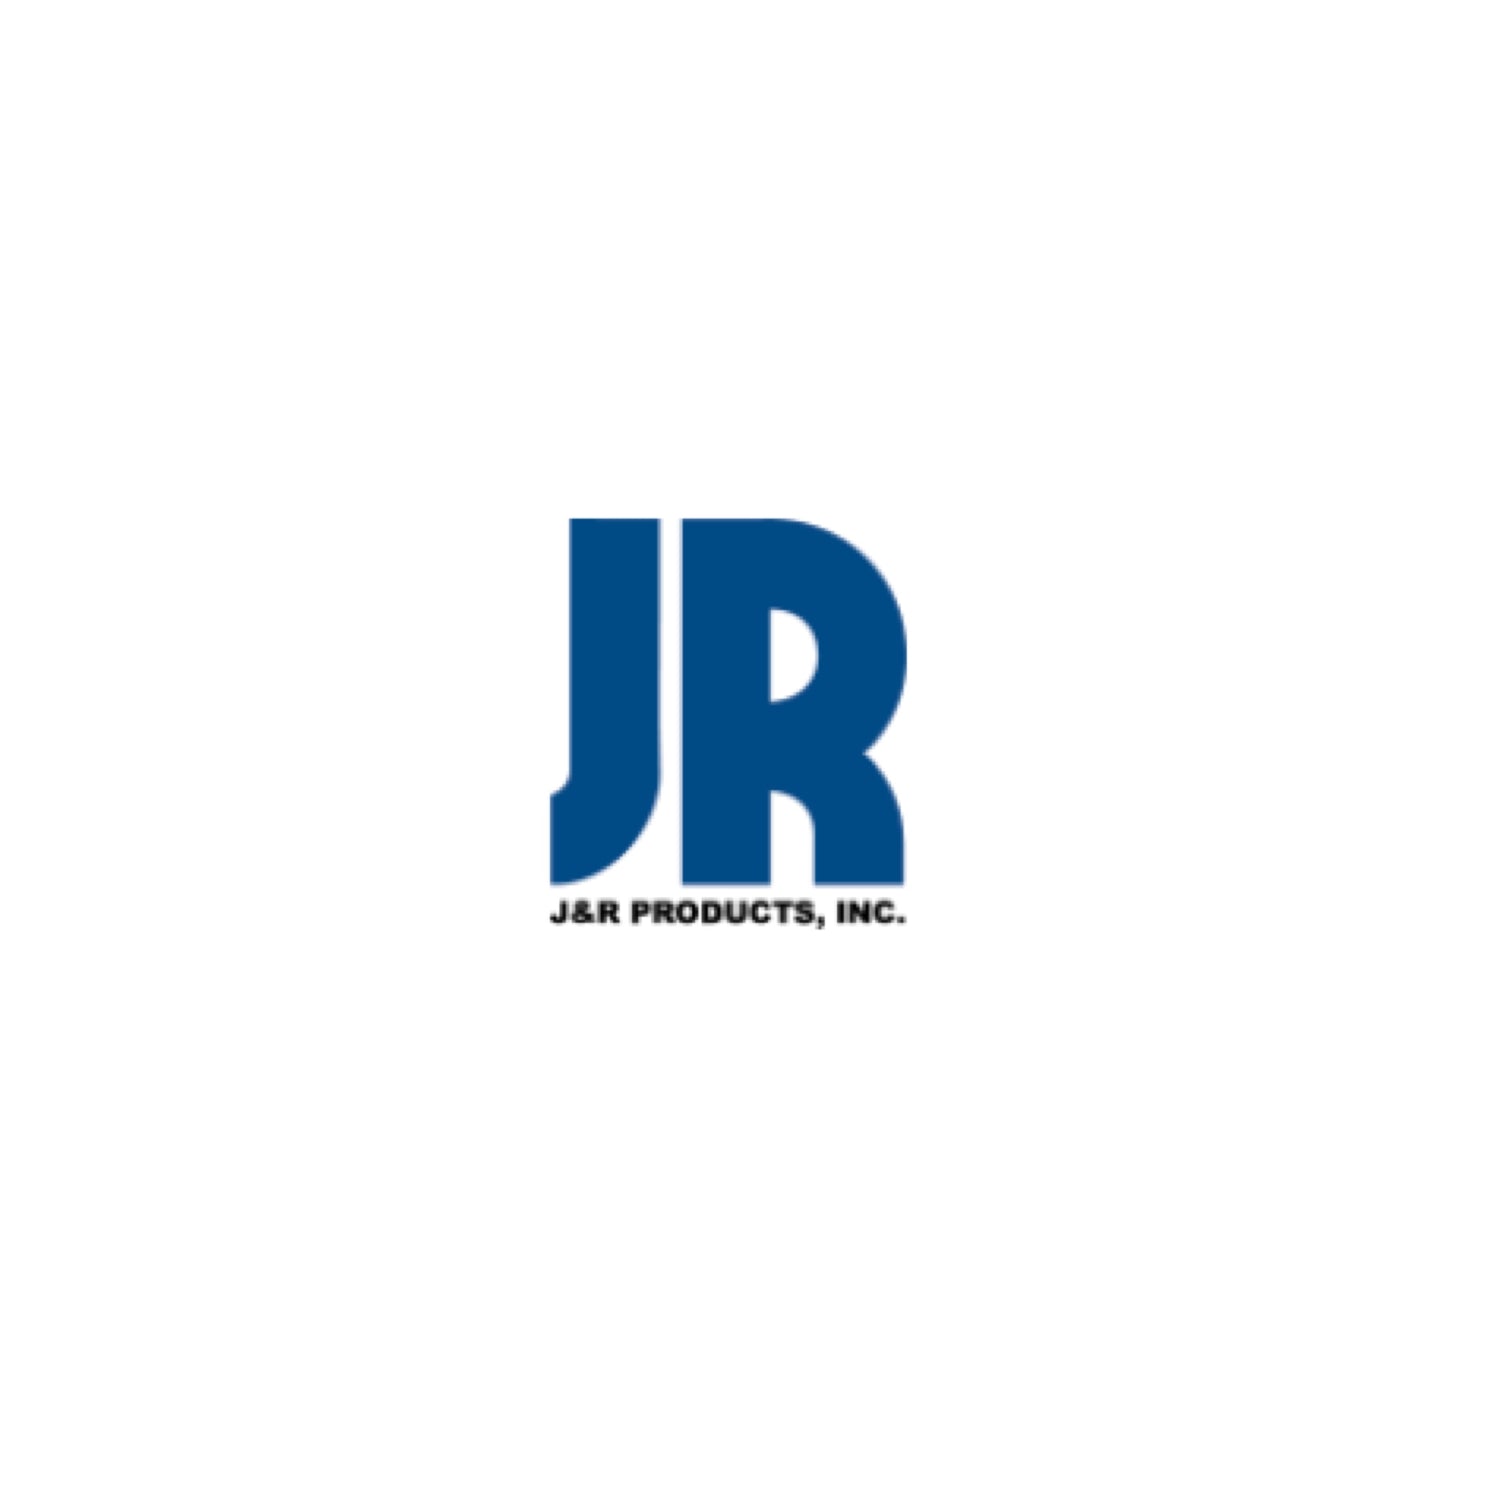 J & R PRODUCTS LLC